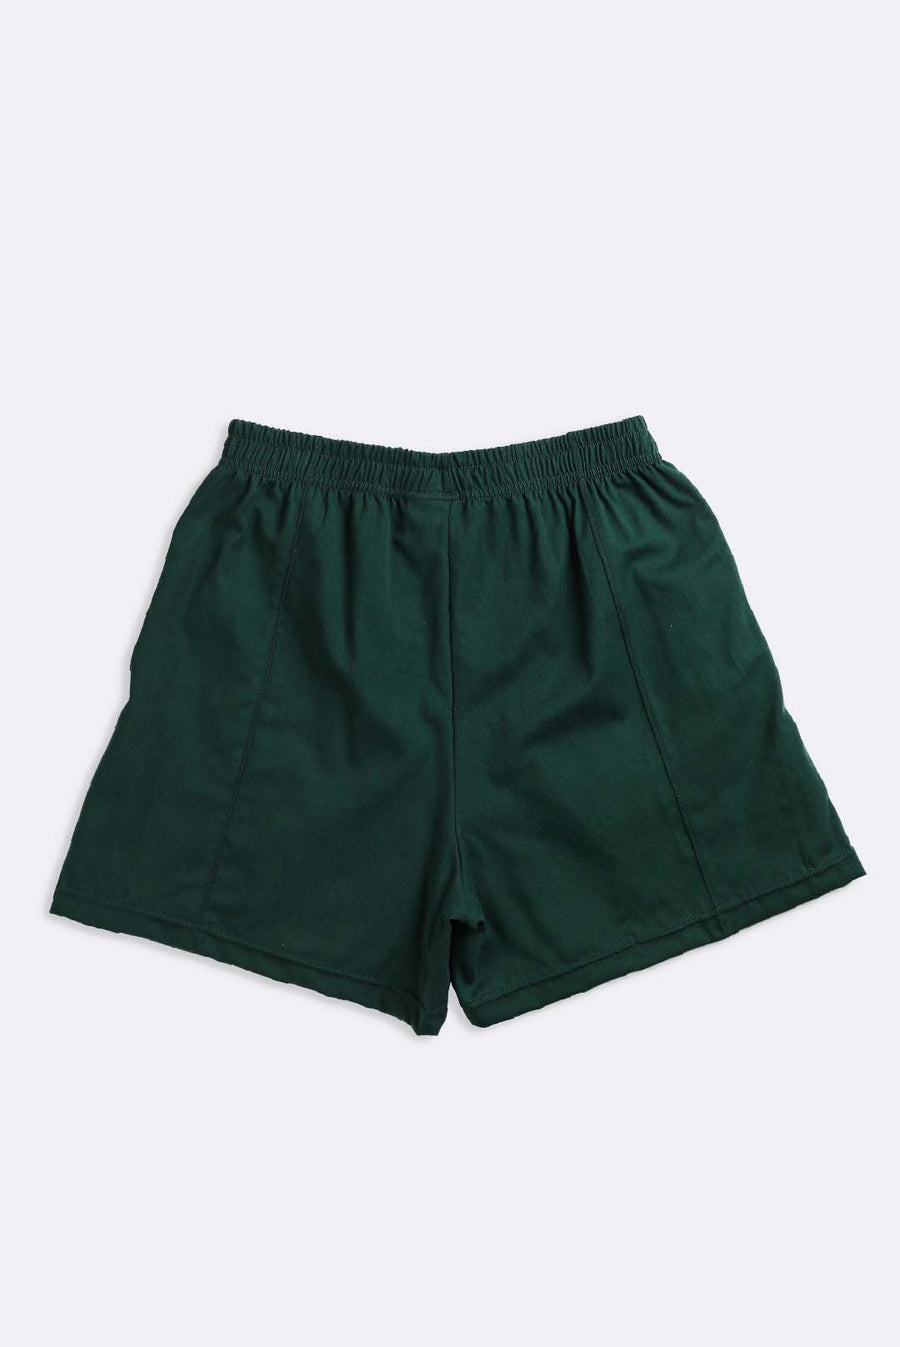 Unisex Rework Polo Oxford Boxer Shorts - S